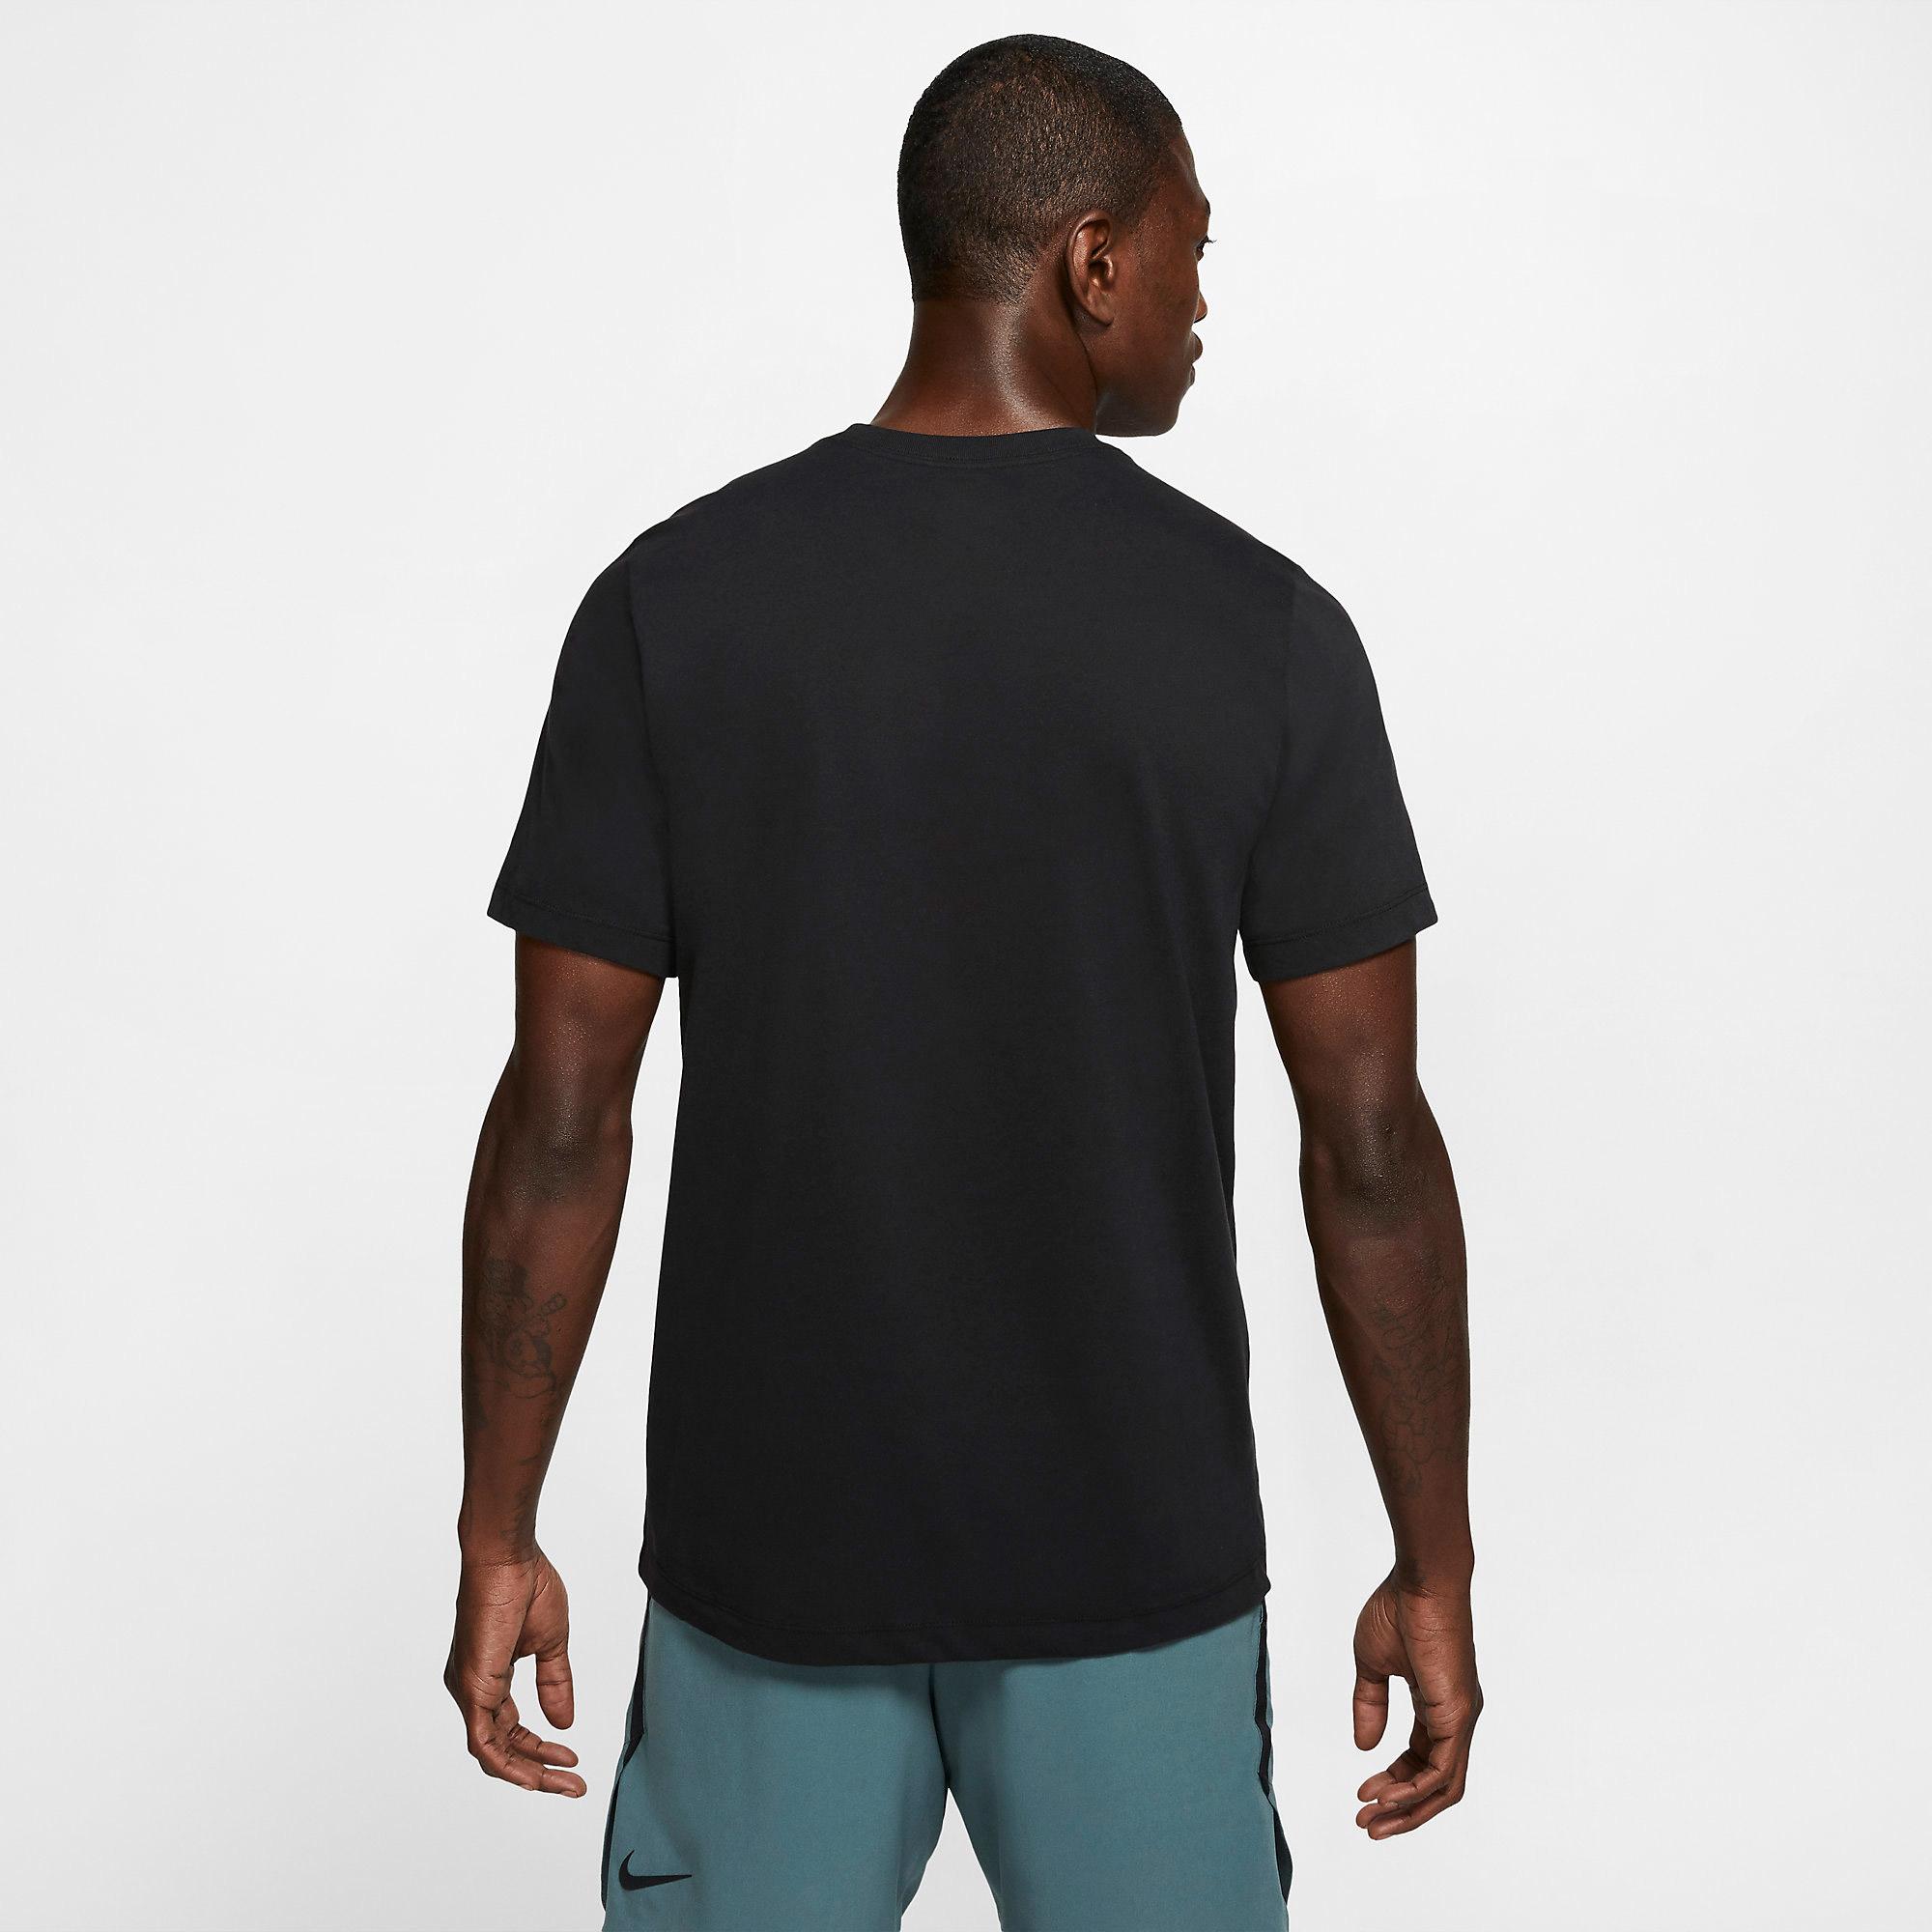 Nike Mens Dri-FIT Training Top - Black - Tennisnuts.com